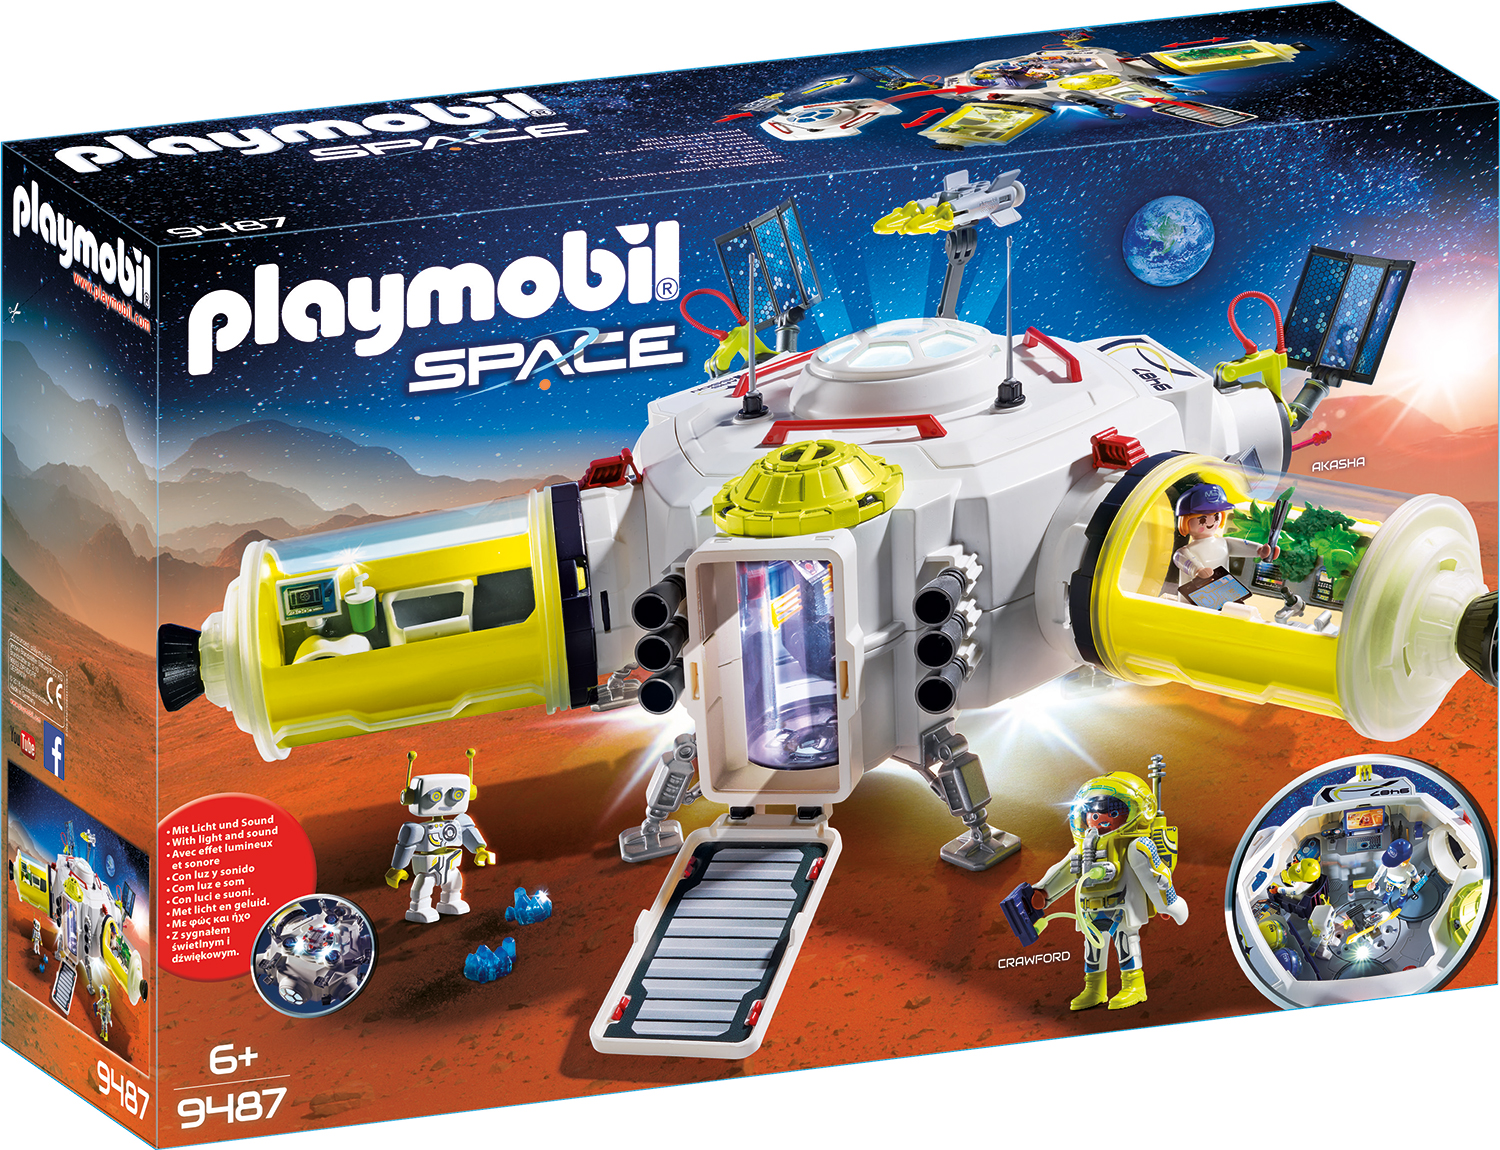 Statie spatiala playmobil space